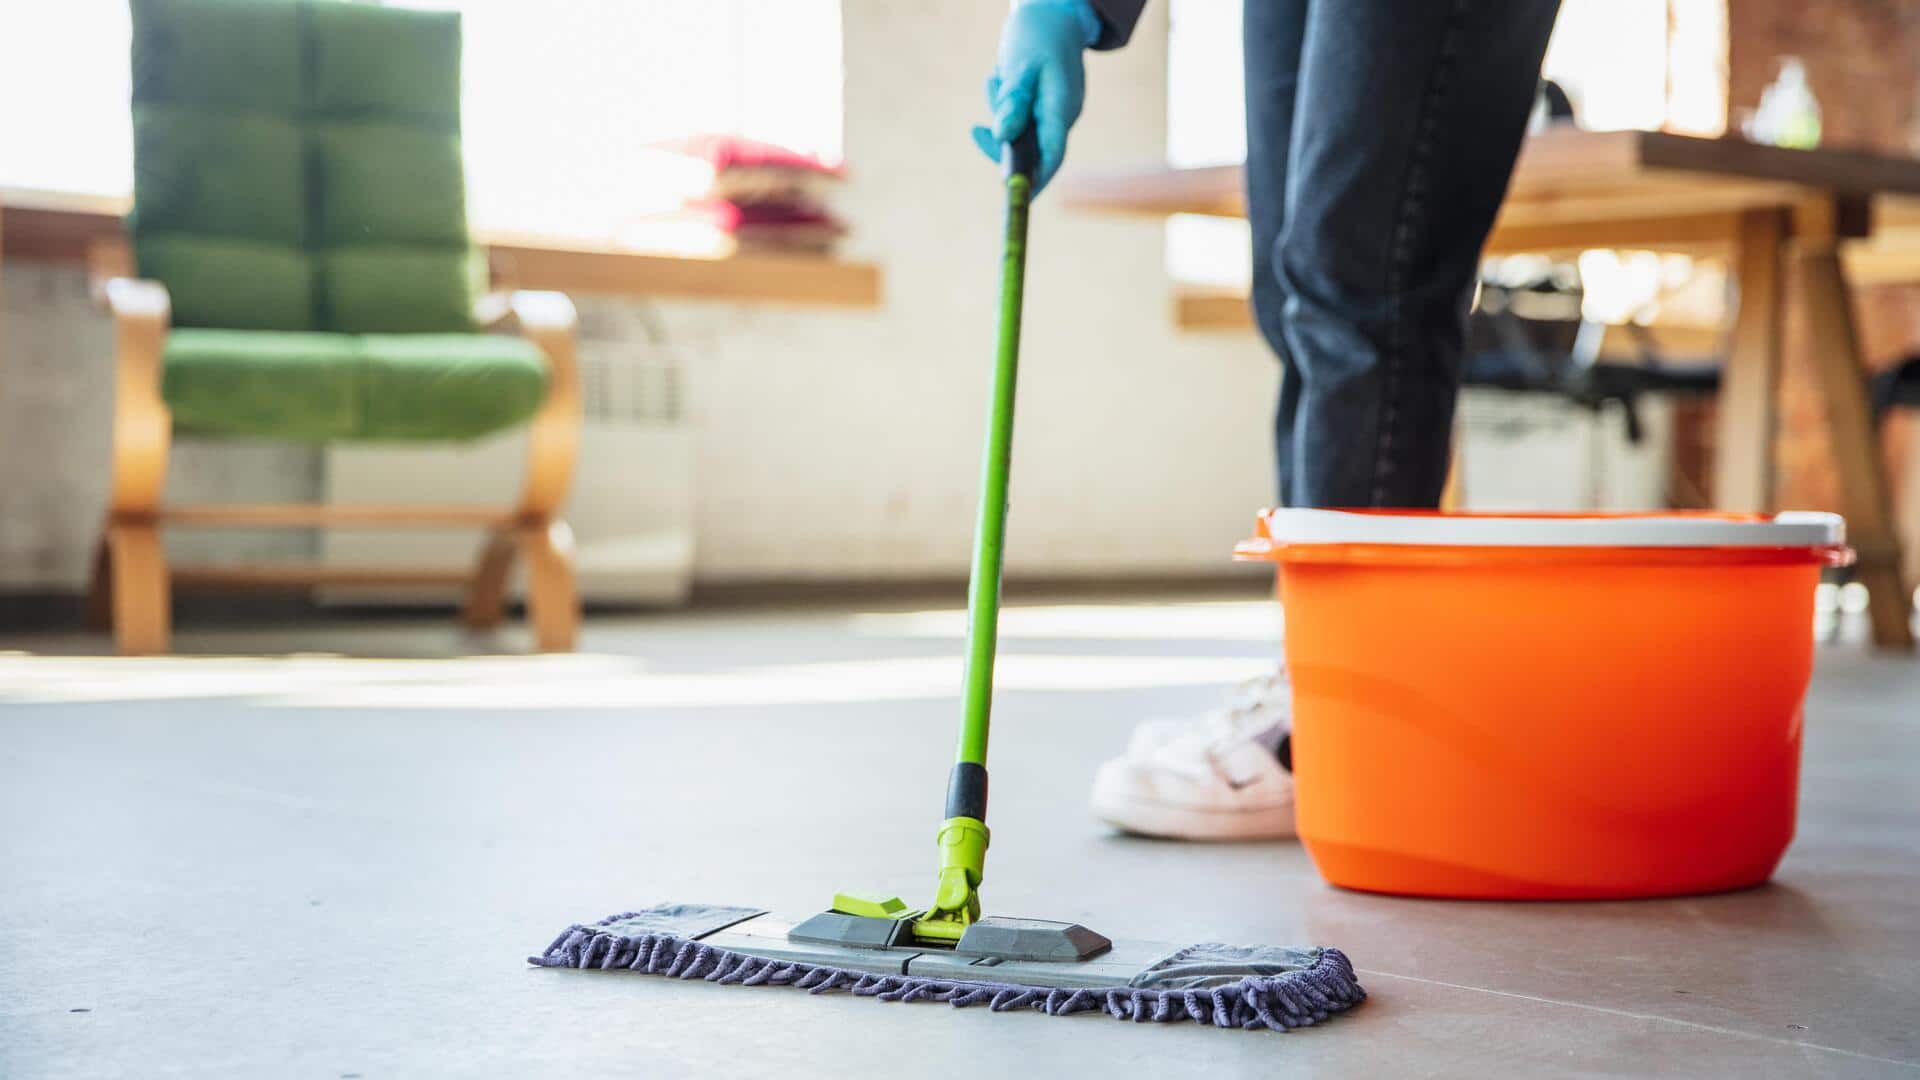 मानसून के दौरान अपने घर को साफ और फ्रेश रखने के लिए अपनाएं ये 5 तरीके